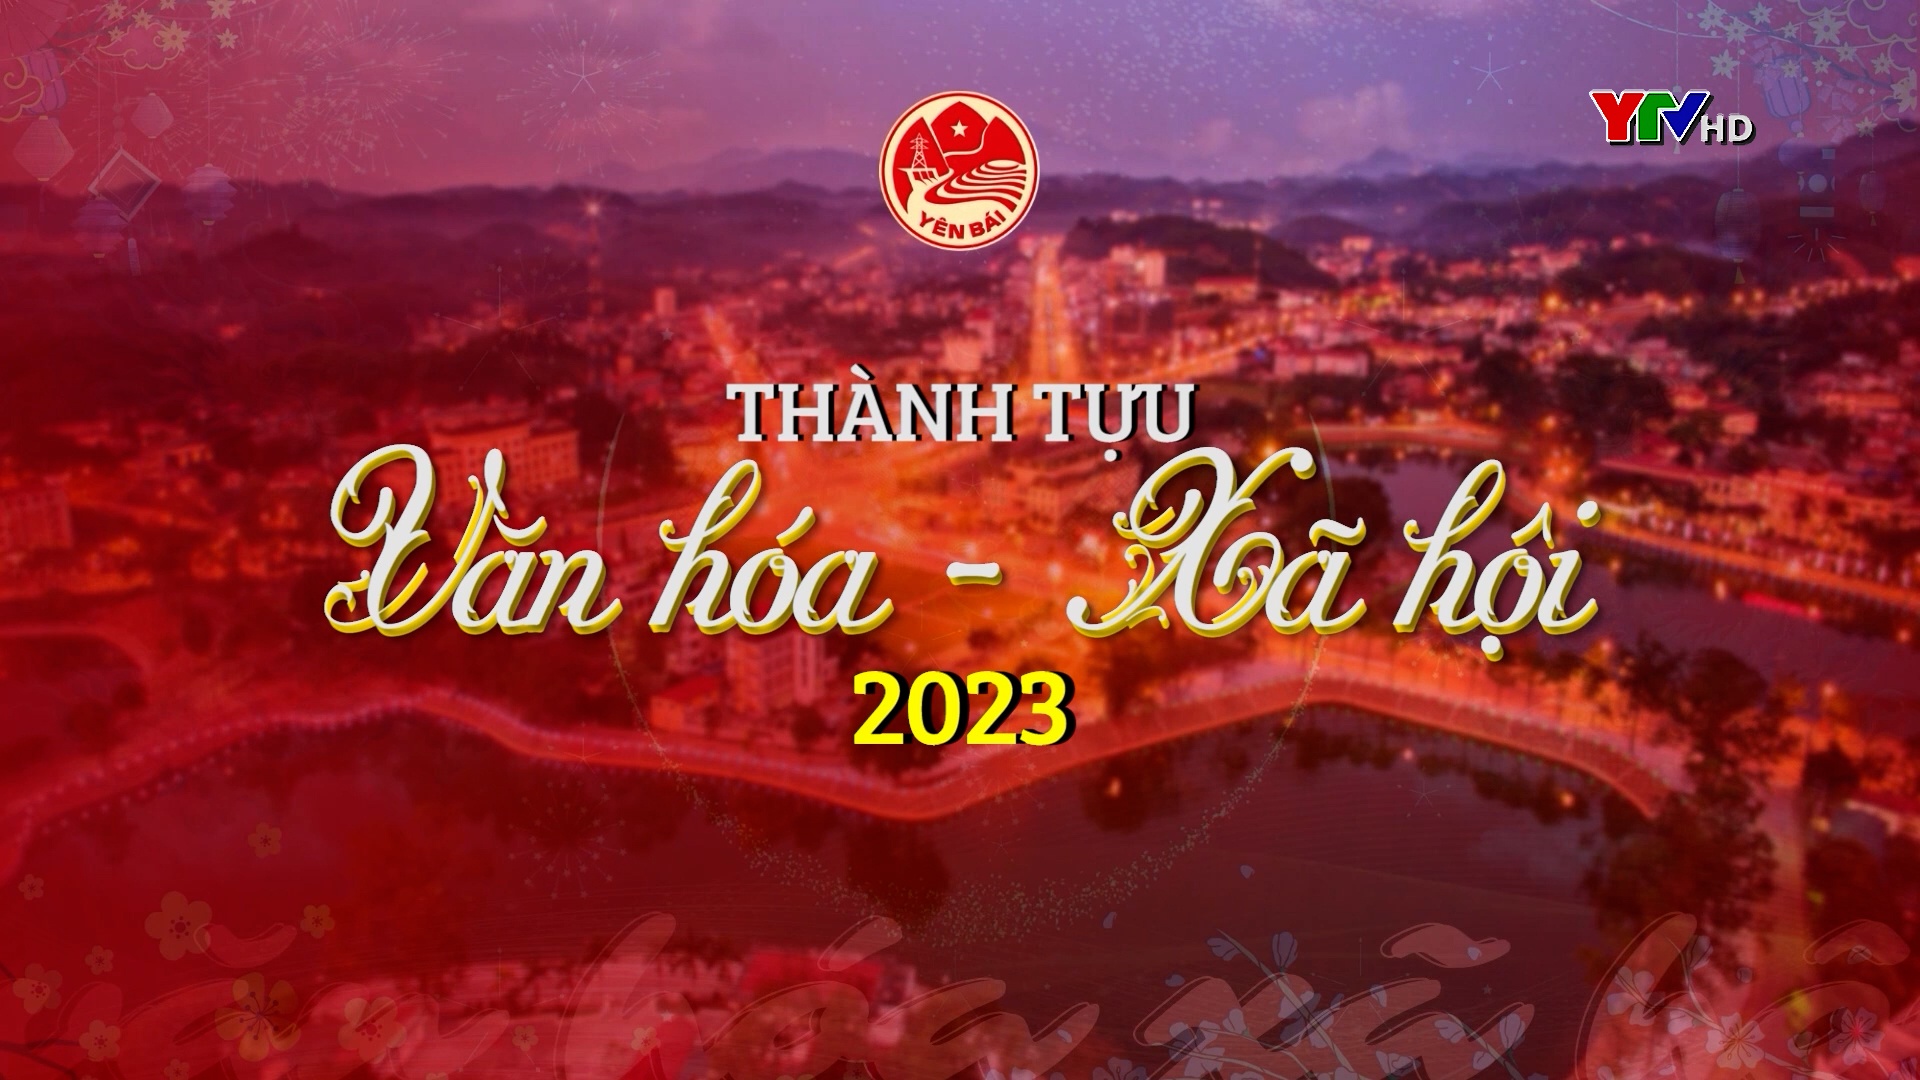 Thành tựu trong lĩnh vực văn hóa - xã hội tỉnh Yên Bái năm 2023